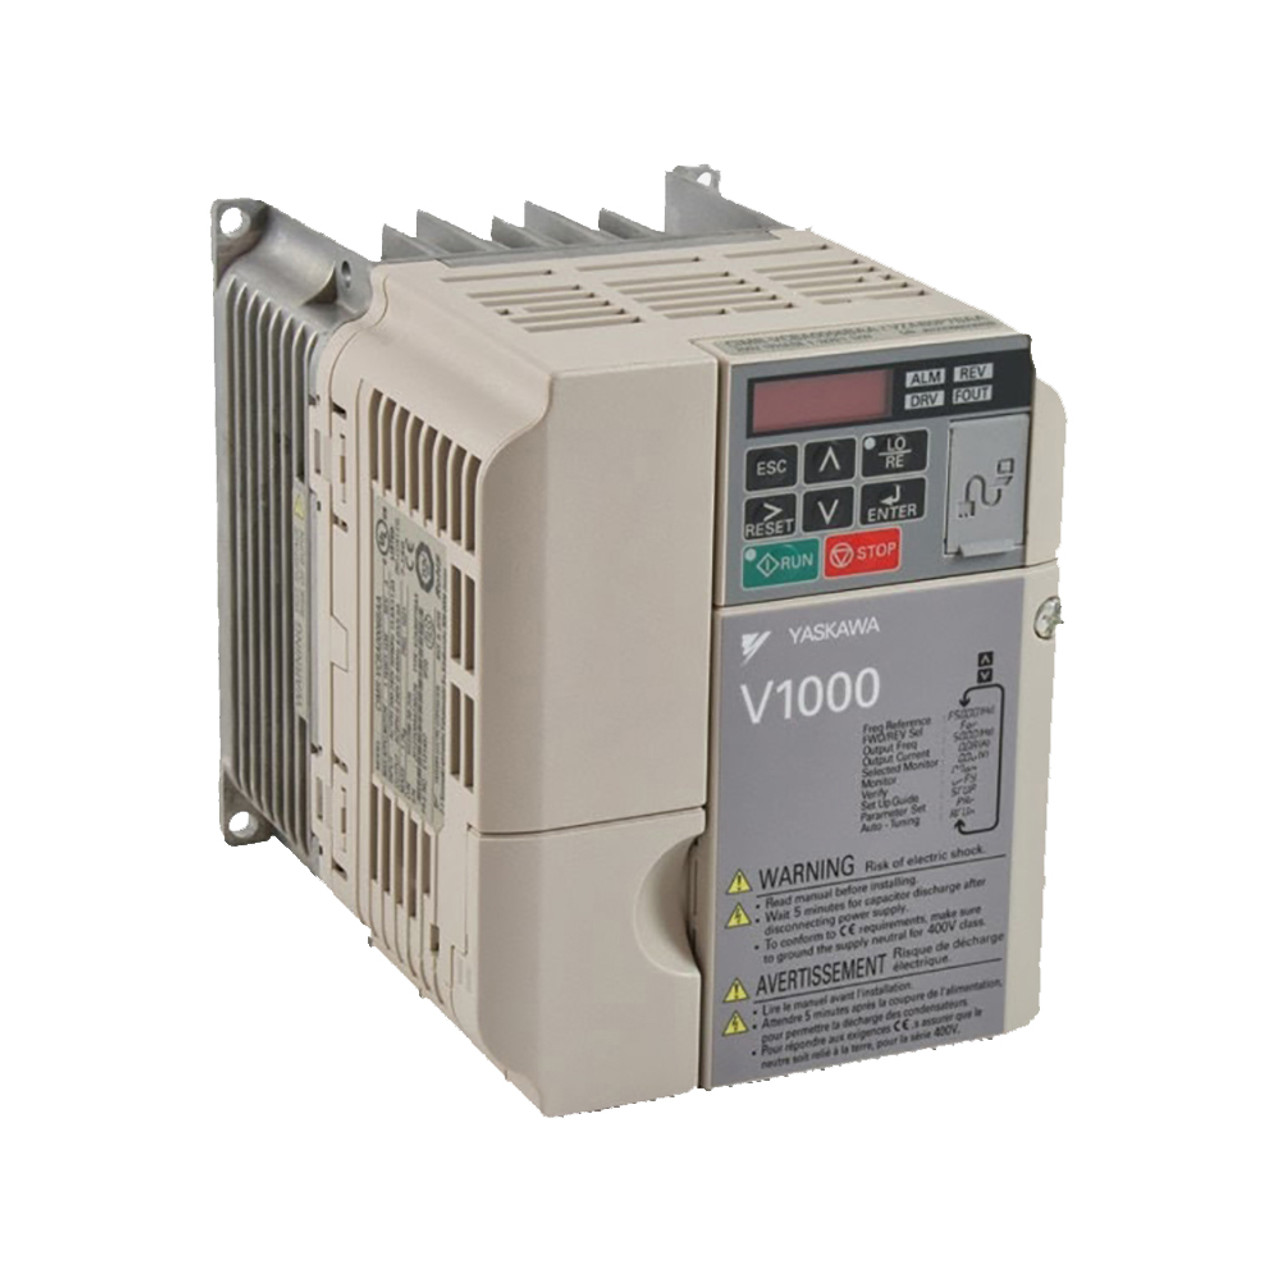 （長期欠品中） 安川電機 インバータ CIMR-VA2A0020BAA  (三相モーター制御用) V1000シリーズ 三相 200V 3.7kW 電流ベクトル制御インバーター 保護構造 IP20 - 3